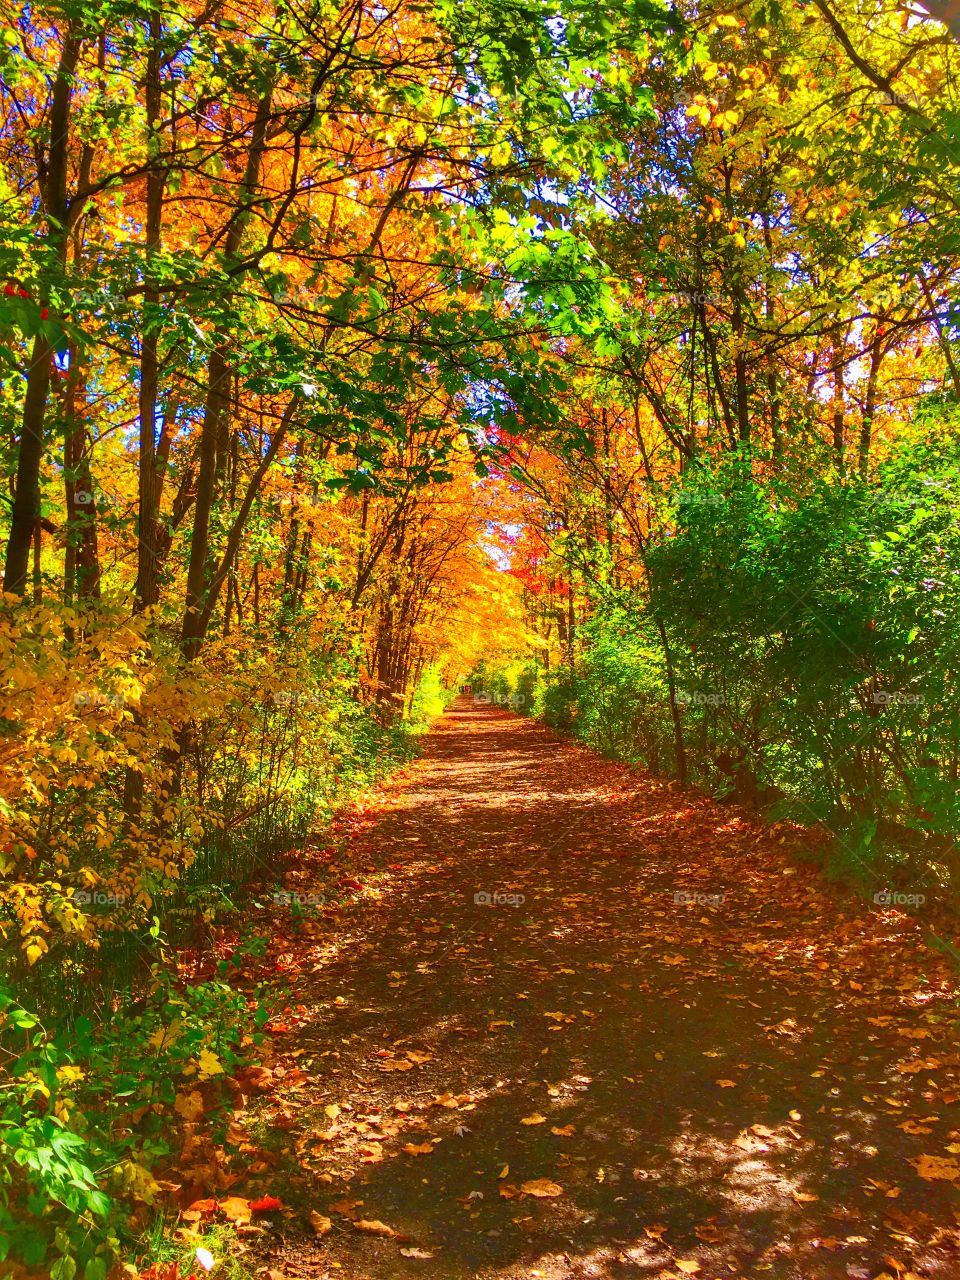 Clinton River Trail. Michigan autumn is unbelievable!! 